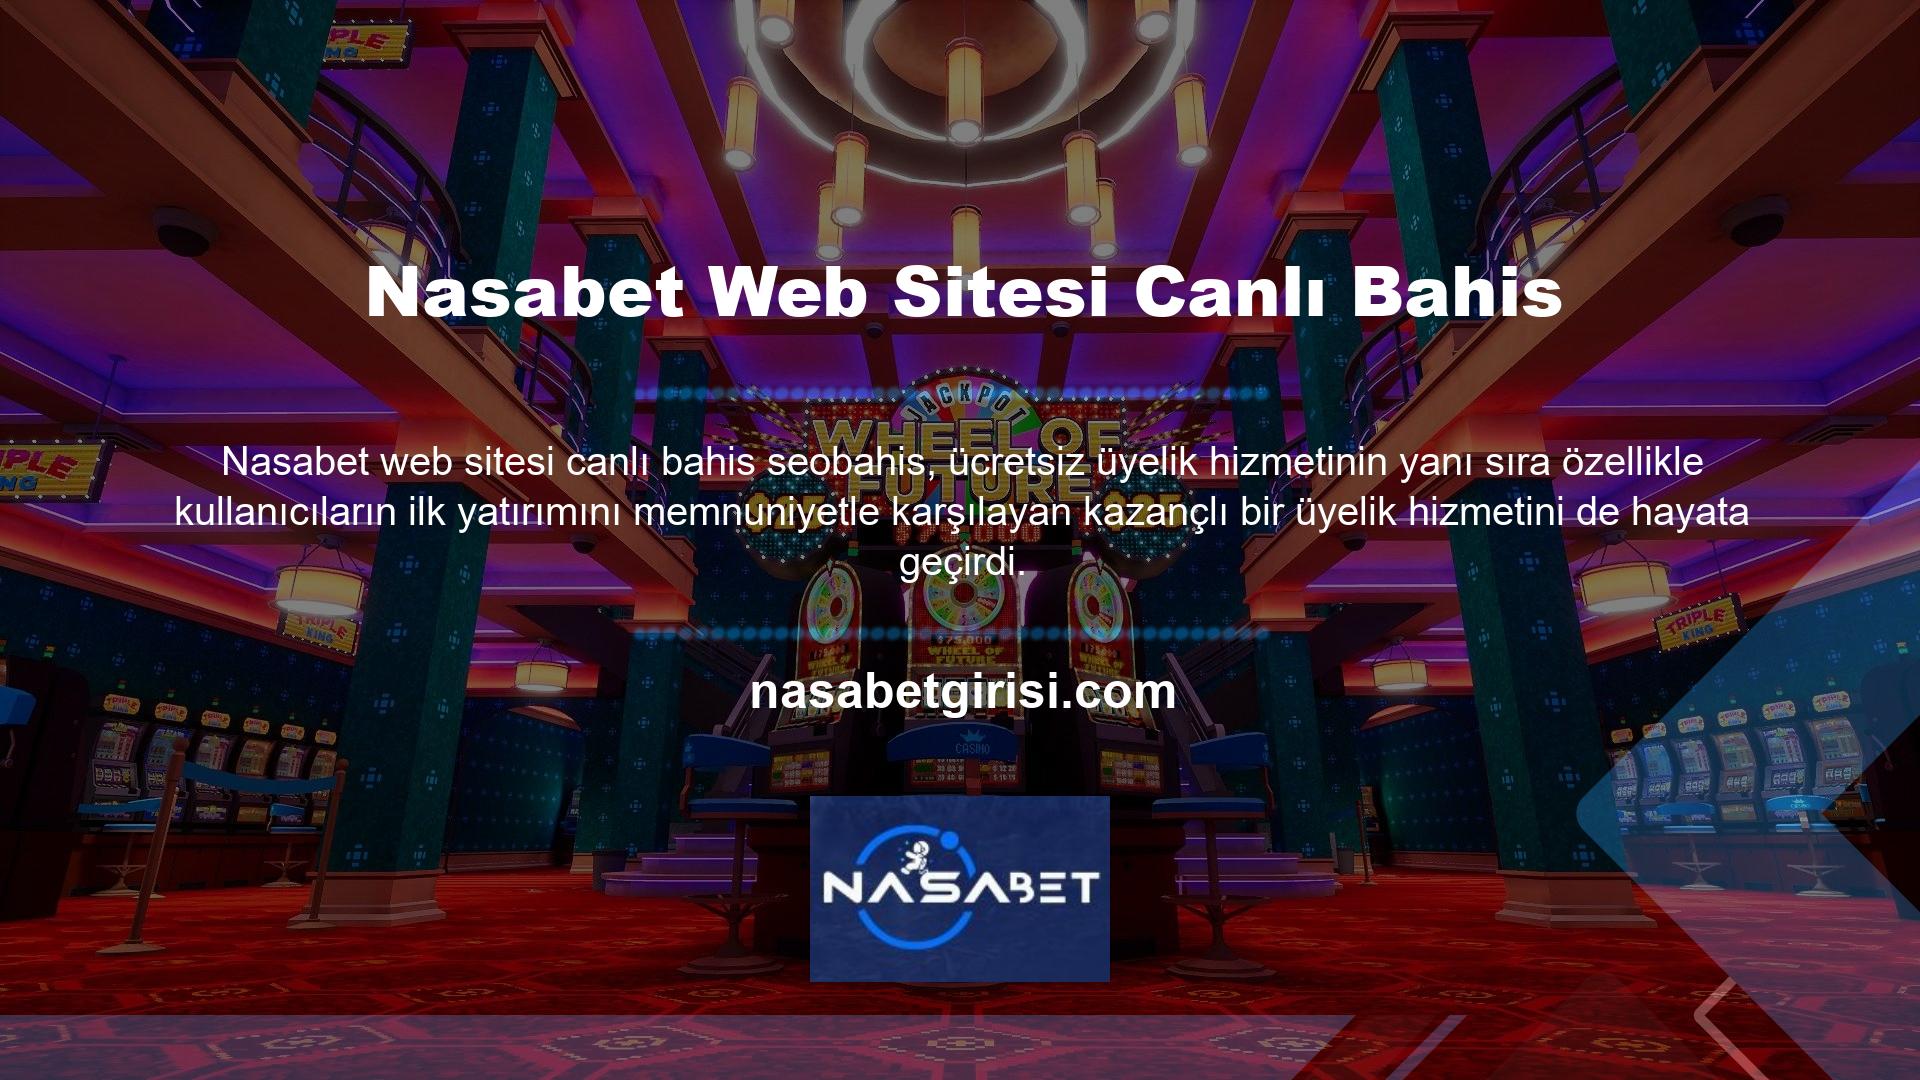 BTK'nın mevcut giriş adresi bloke edilmiş olmasına rağmen Nasabet, kullanıcılara yalnızca yeni adresi güncelleyecek ve yeni giriş adresini bildirimler yoluyla üyelere bildirecektir